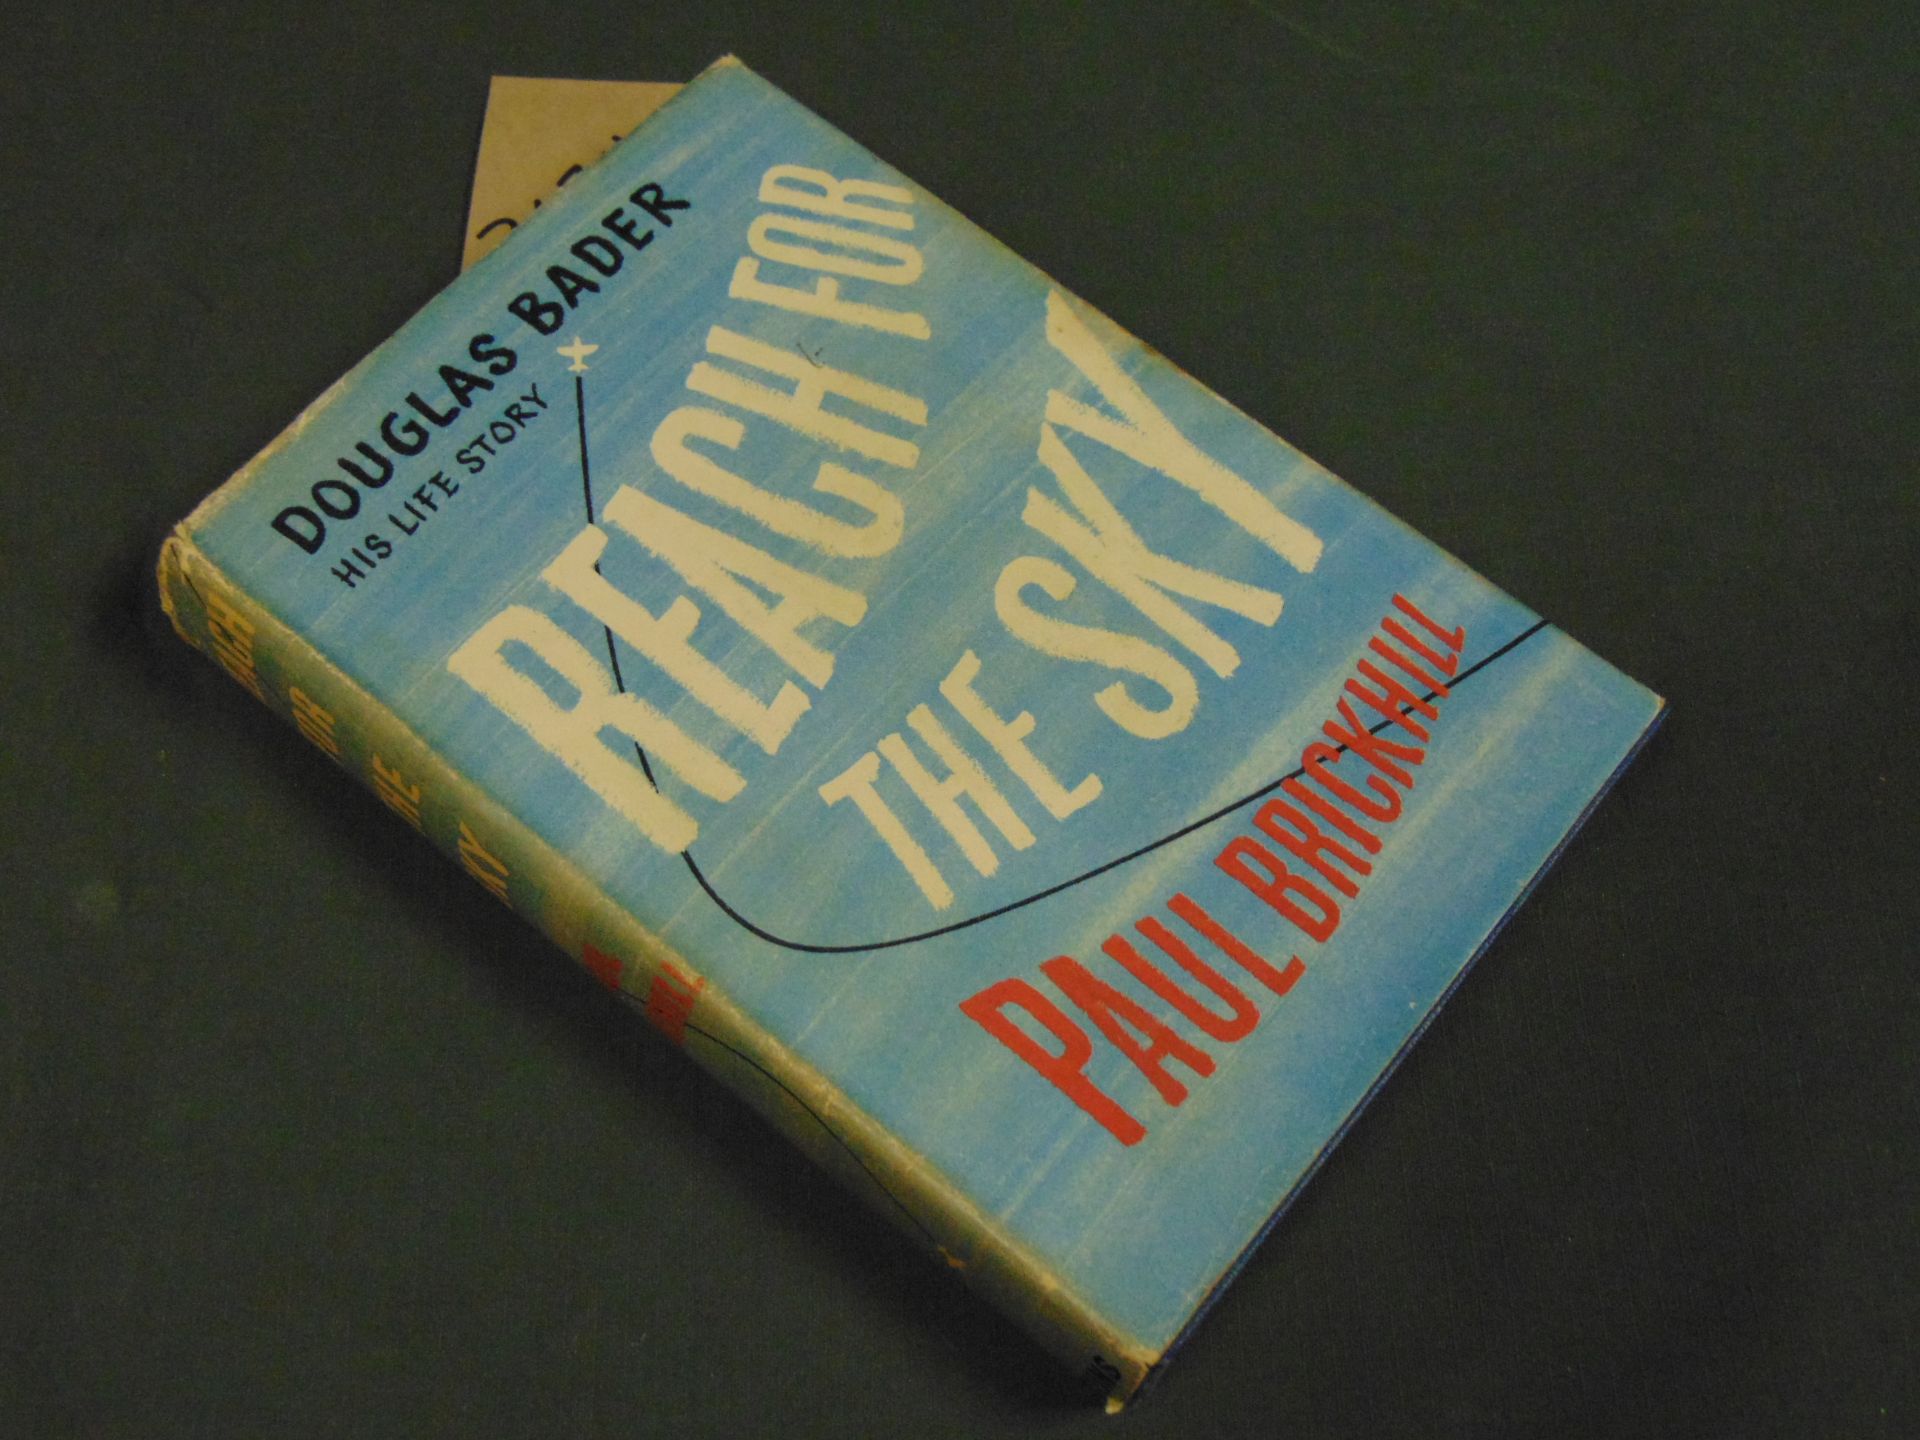 1954 Copy of REACH FOR THE SKY, Douglas Bader Life Story